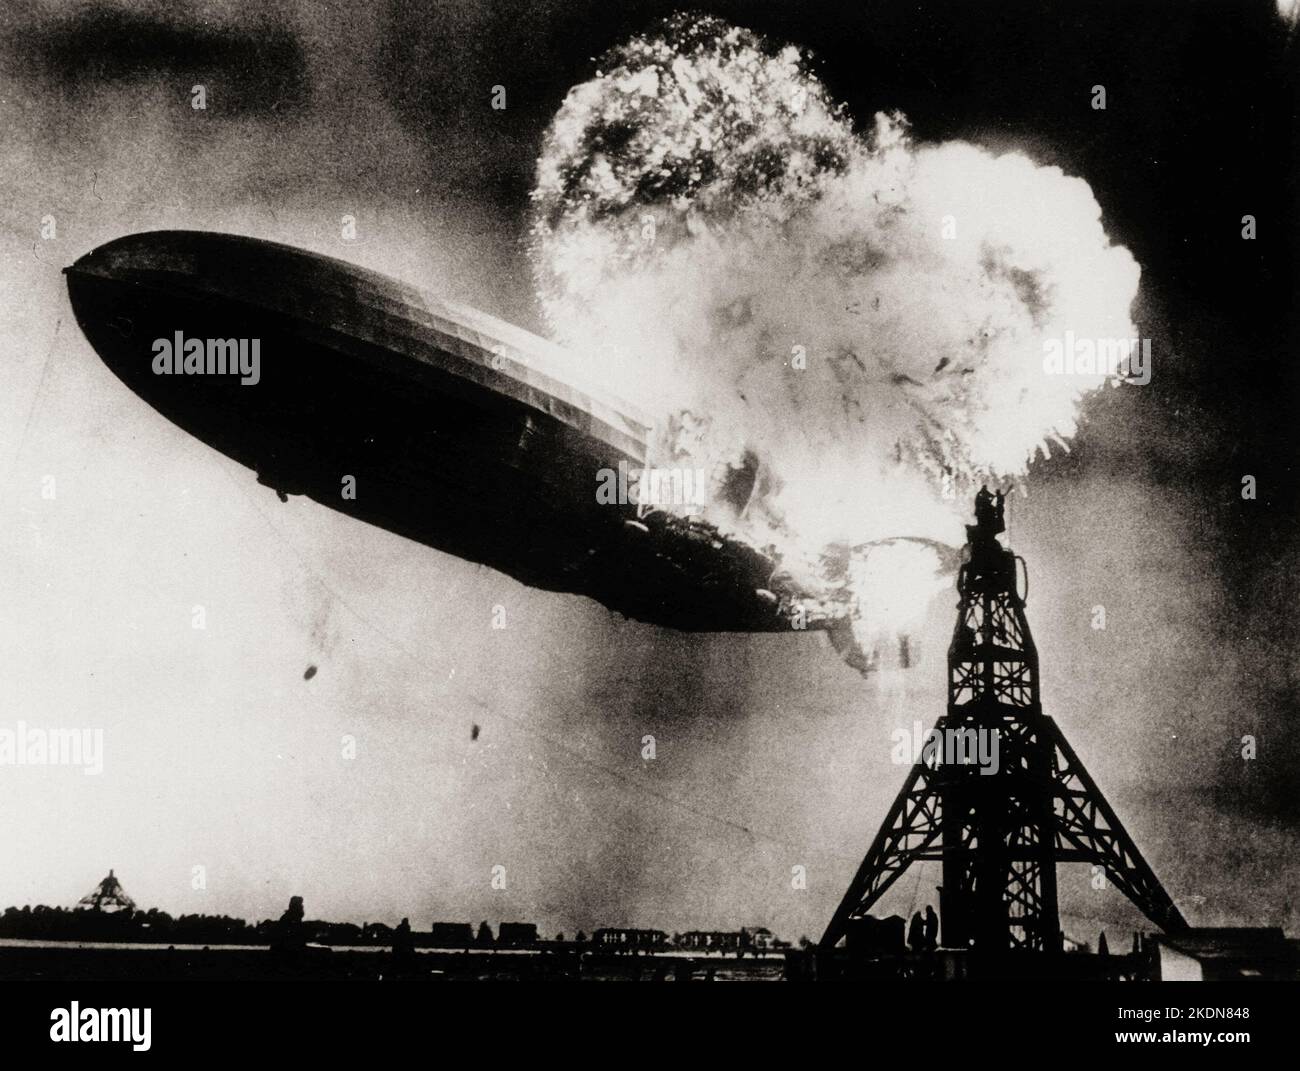 ANTICIPO PER DOMENICA AGOSTO. 22--FILE--questa foto, scattata durante l'esplosione iniziale dell'Hindenburg, mostra lo zeppelin tedesco di 804 piedi appena prima che le esplosioni successive inviino la nave che si schiantava a terra presso la stazione aeronavale di Lakehurst, N.J., 6 maggio 1937. Le fiamme ruggenti silano due uomini, a destra in cima all'albero di ormeggio, pericolosamente vicino alle esplosioni. La scena ha stimolato l'emittente radiofonica NBC Herbert Morrison a fornire un resoconto memorabile e altamente emotivo del disastro. (AP Photo/Philadelphia Public Ledger, ho) il Zeppelin LZ 129 Hindenburg prendere fuoco il 6 maggio 1937 Foto Stock